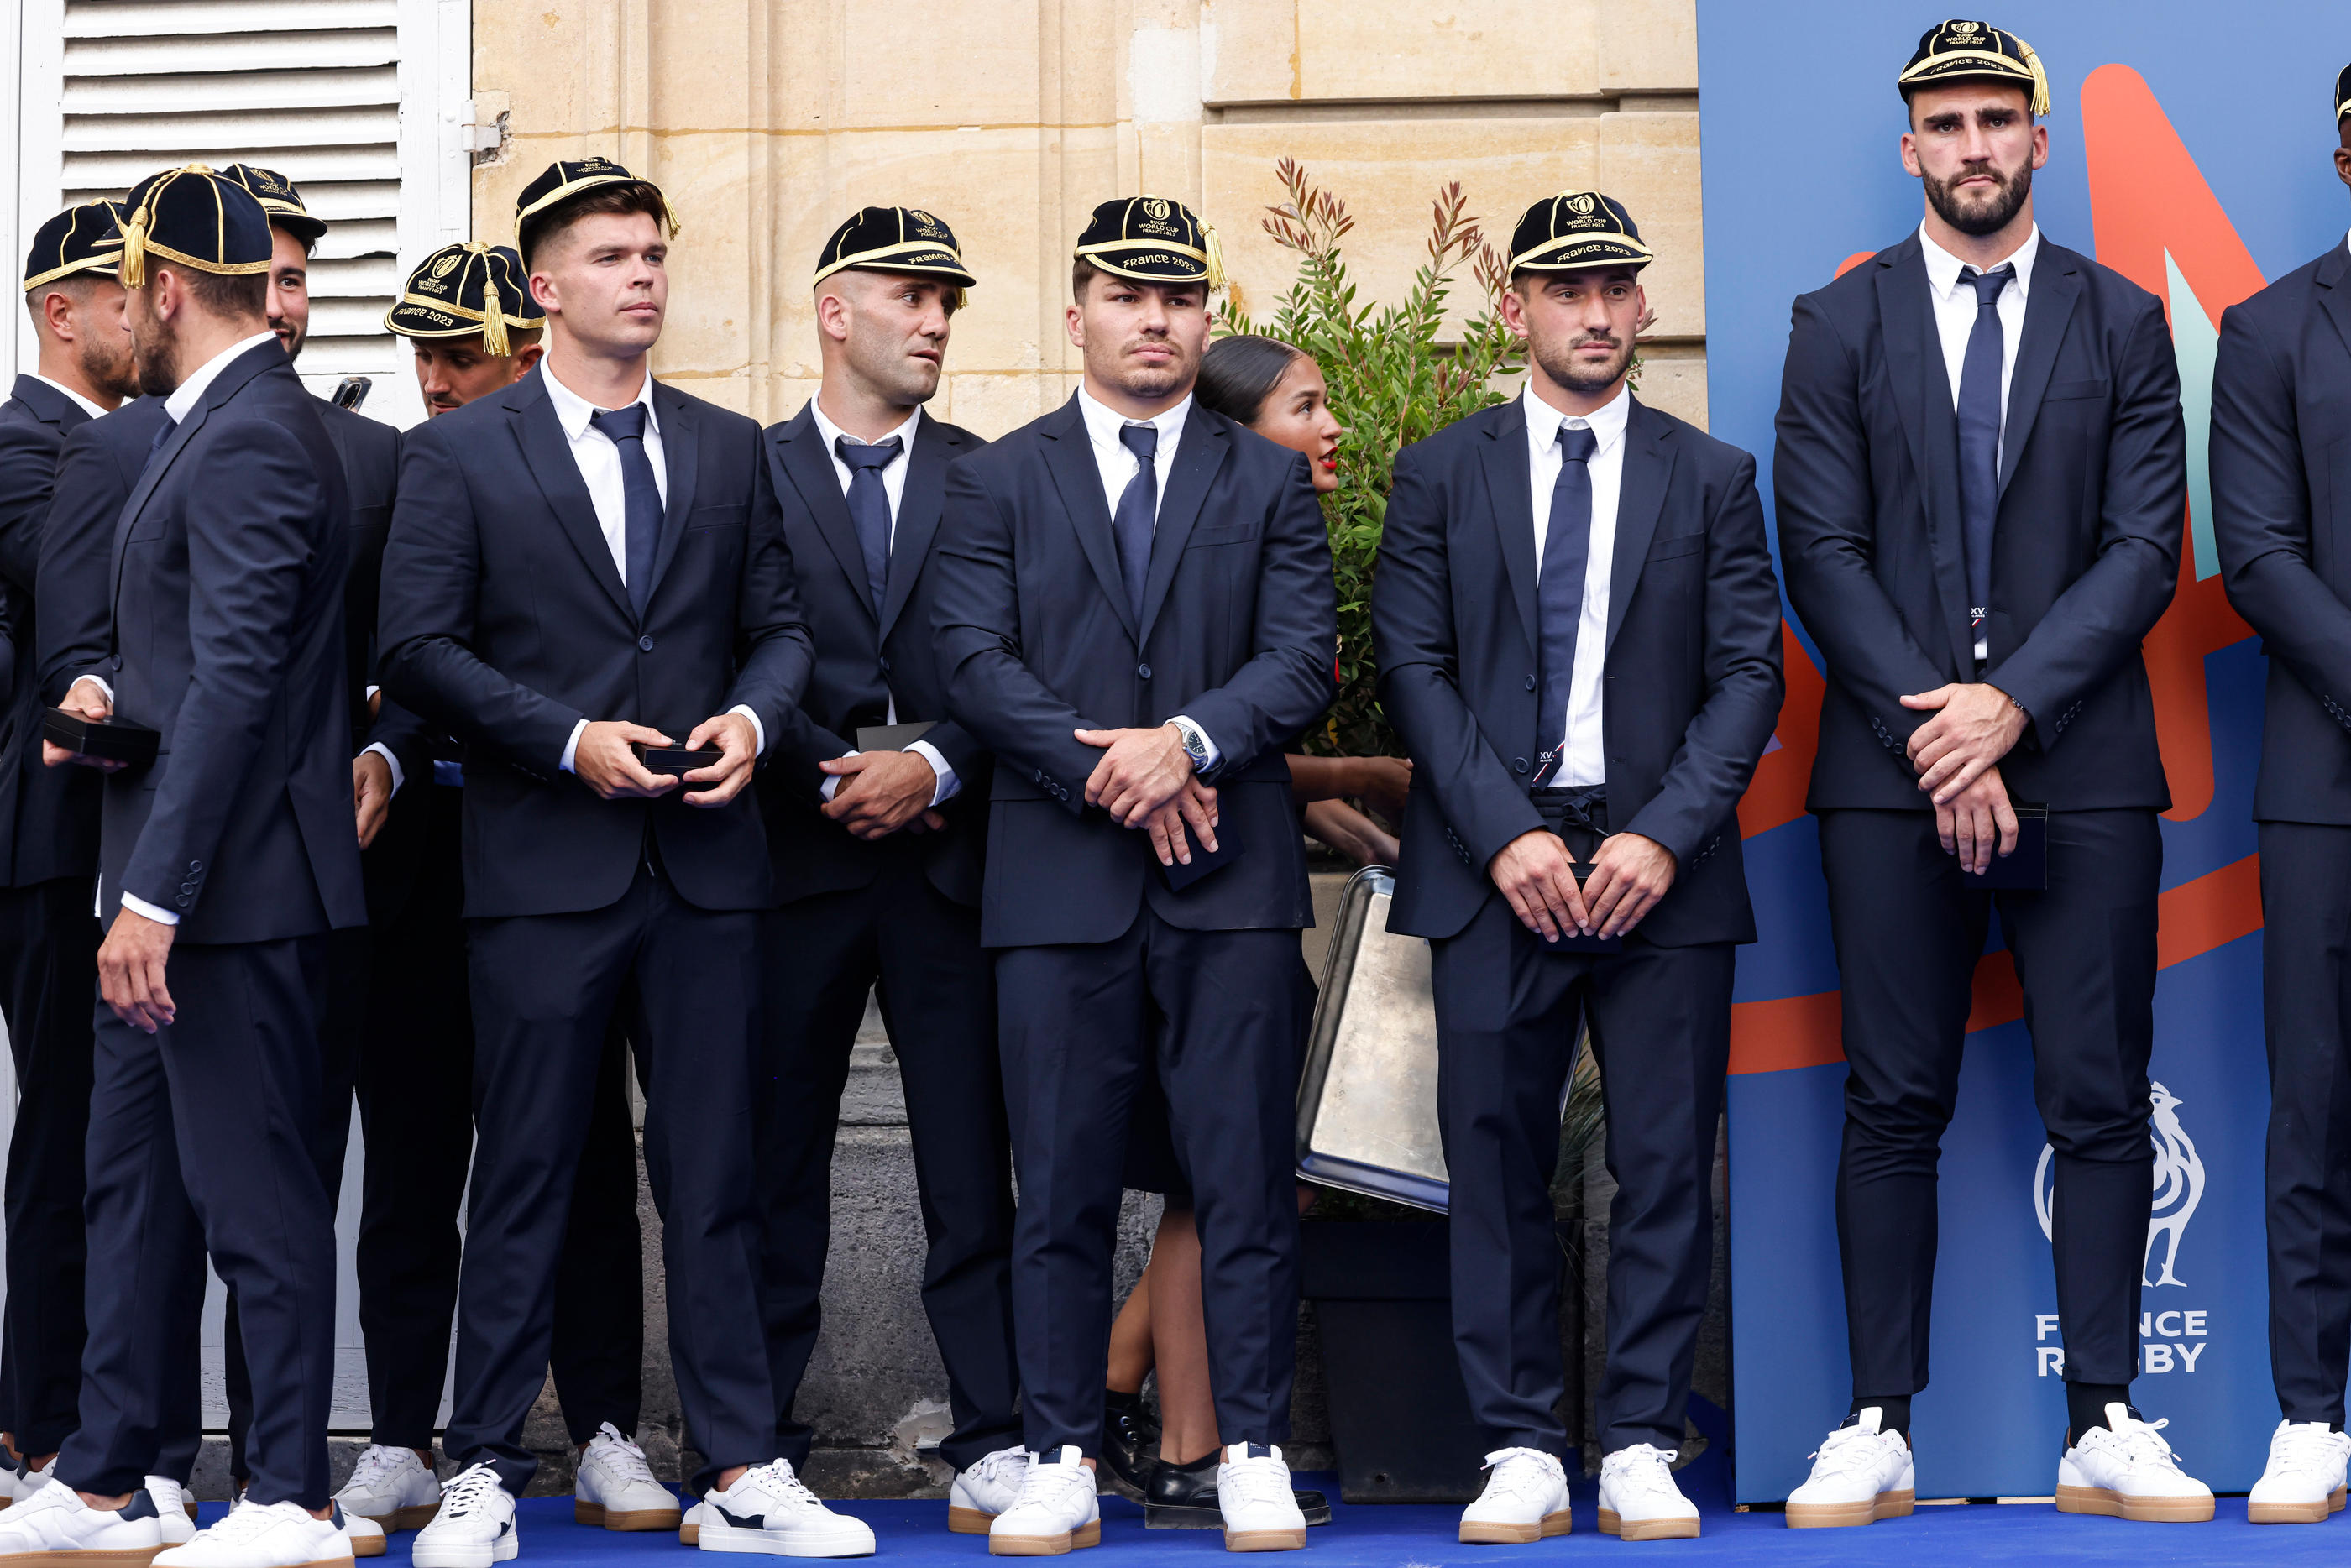 Les joueurs du XV de France ont reçu leur casquette qui symbolise leur participation à la Coupe du monde, samedi à Rueil-Malmaison. LP / Olivier Corsan